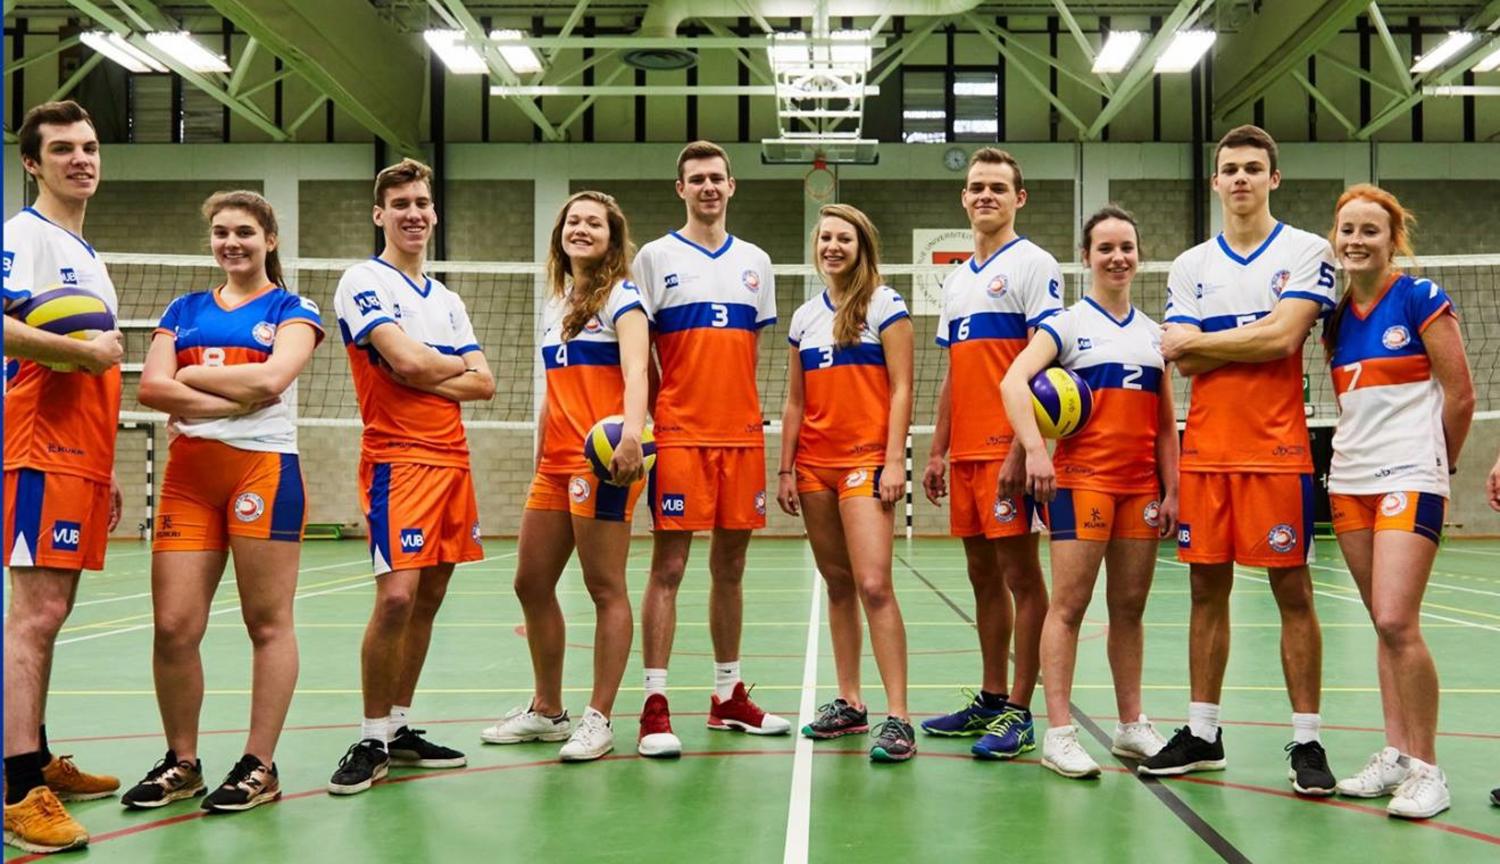 Groepsfoto van de Foxes University Team in de sportzaal van Campus Etterbeek